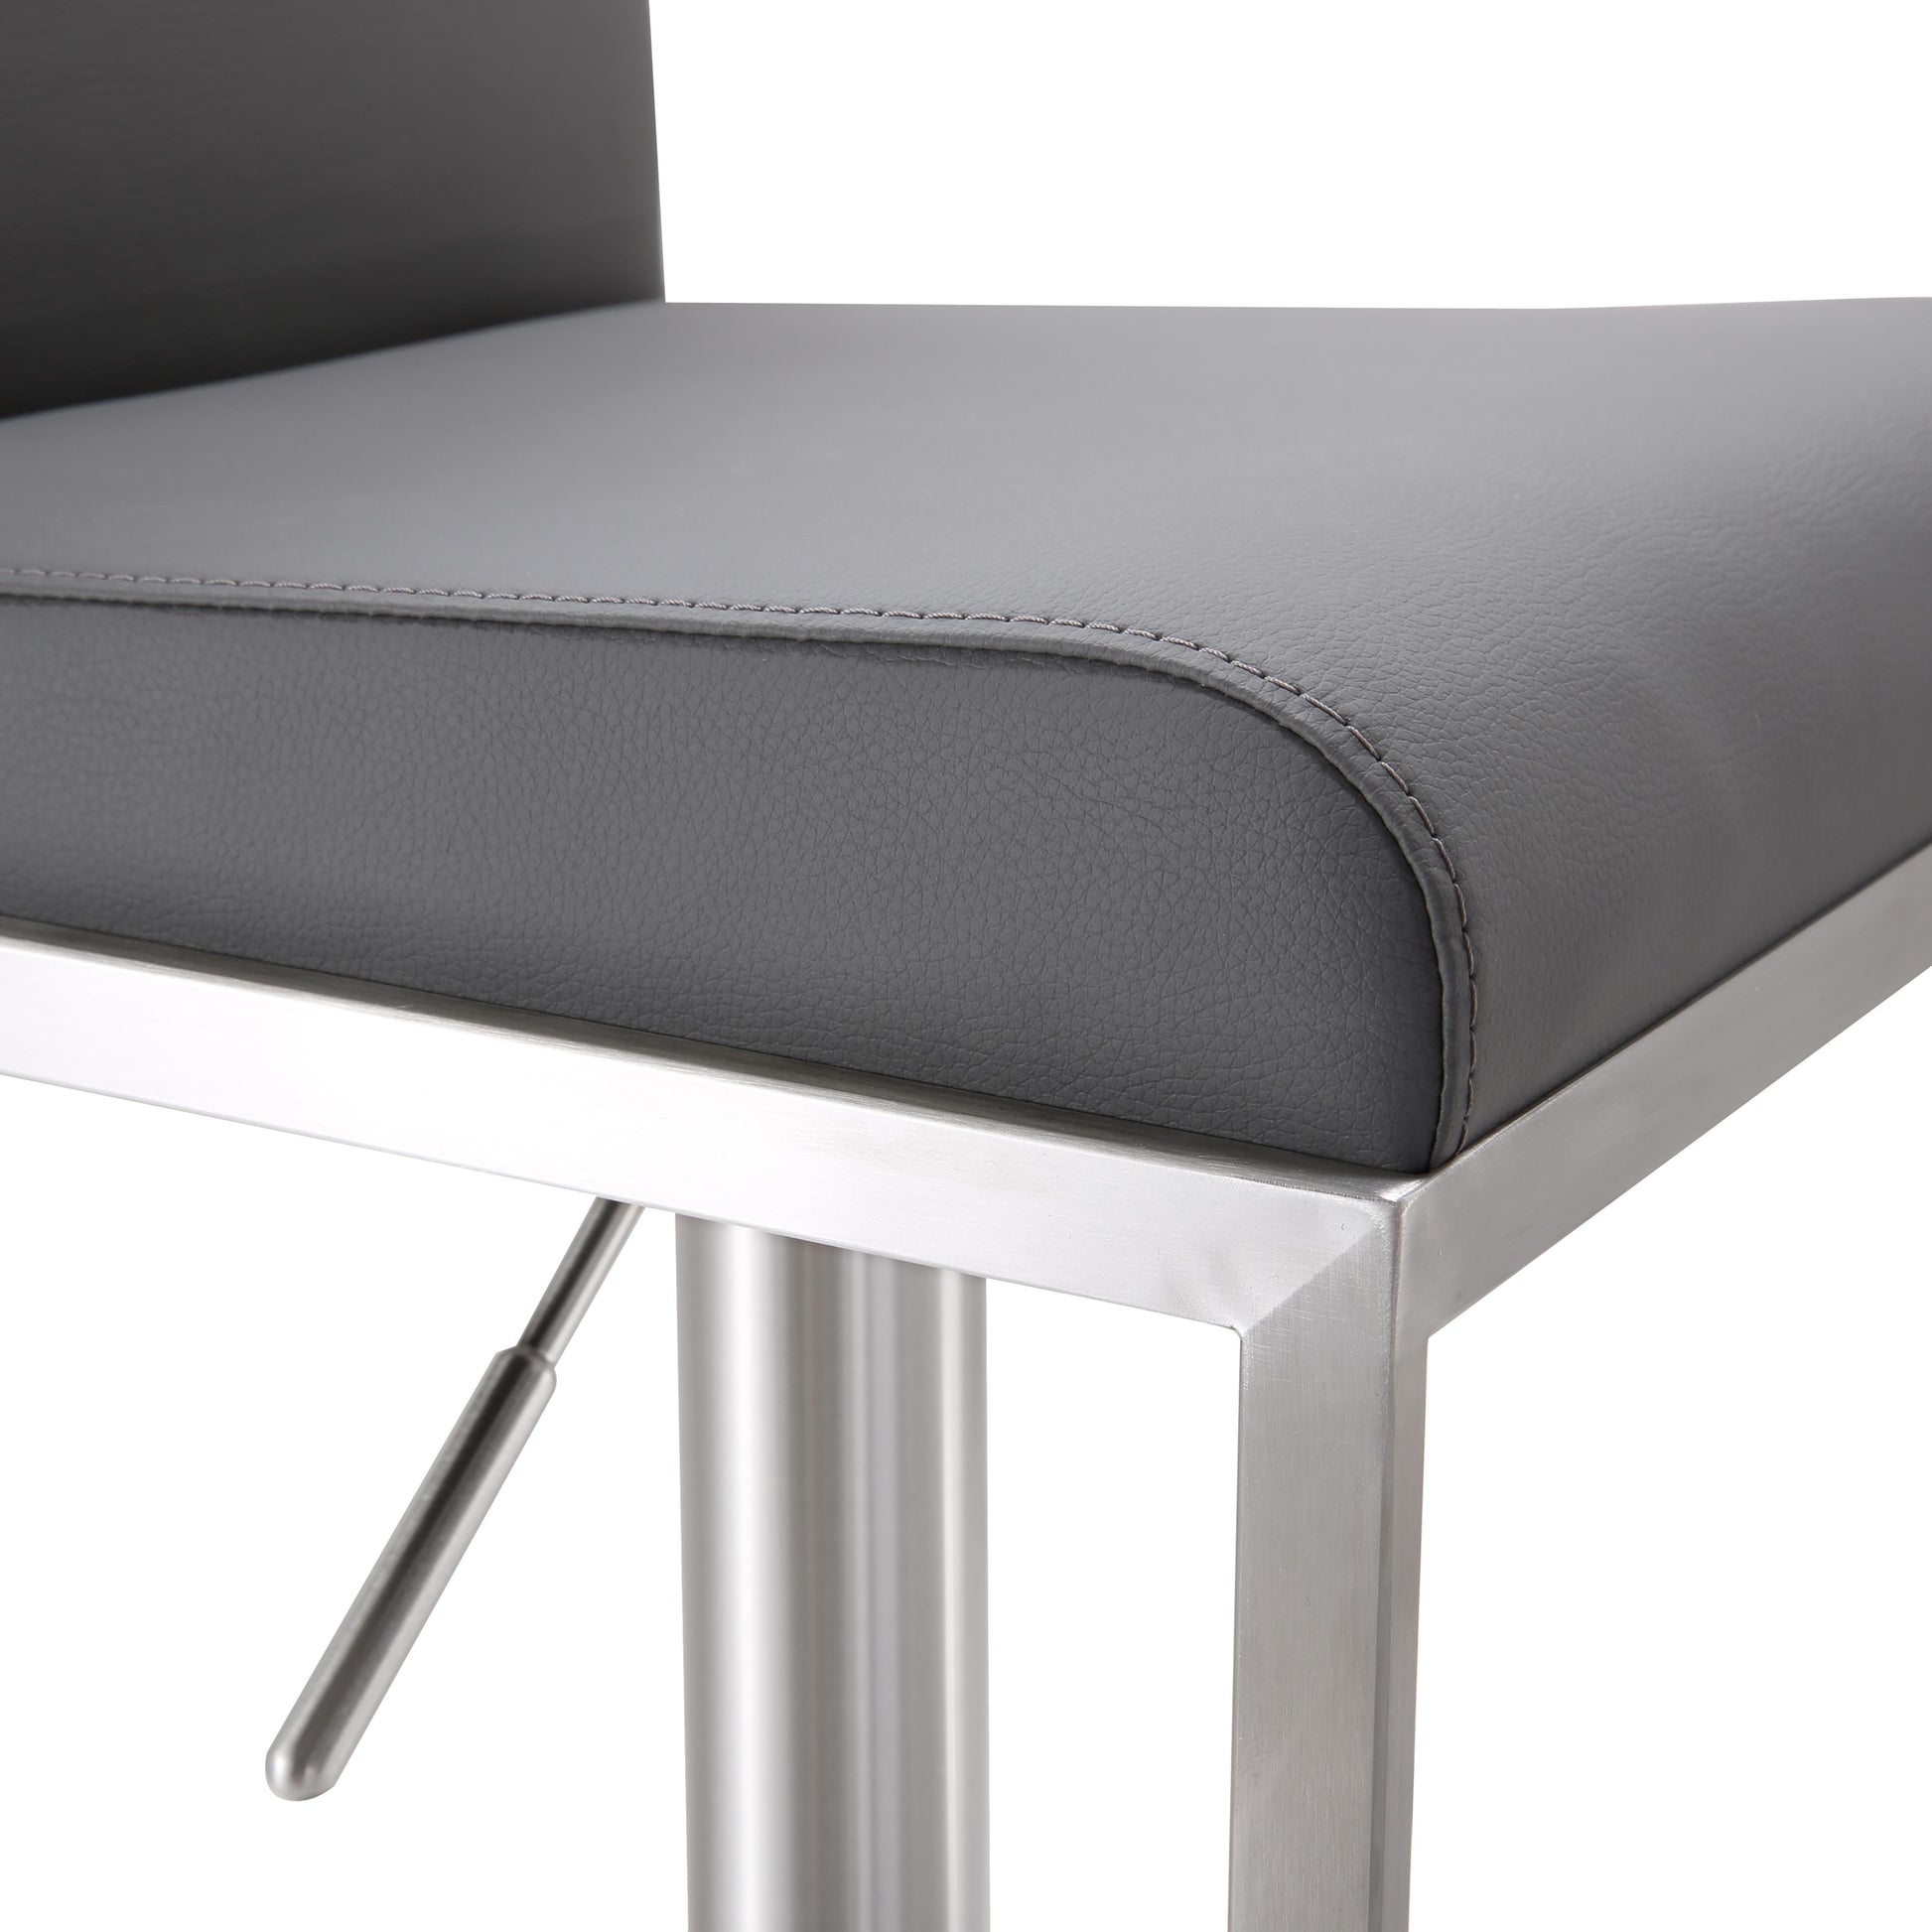 Vegan Amalfi TOV Leather Stool Furniture – Adjustable